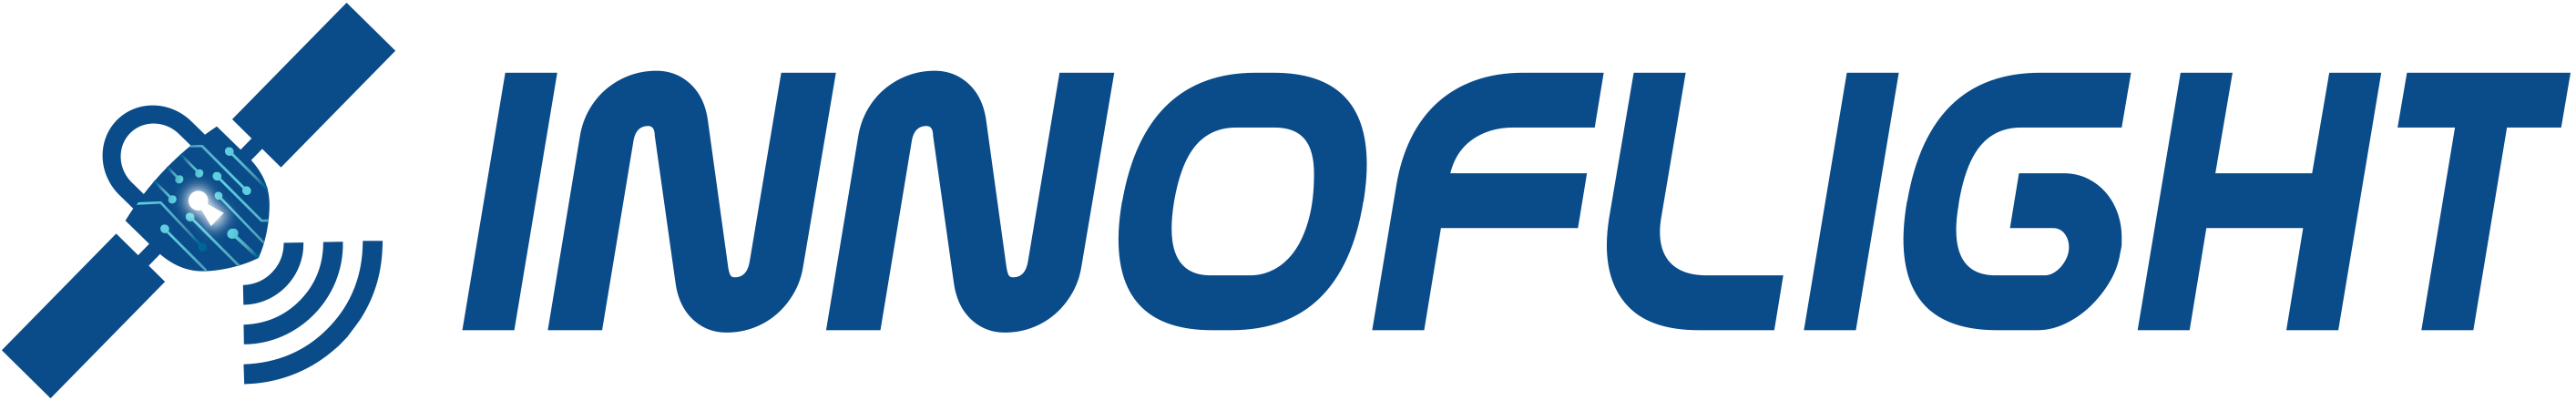 Innoflight logo